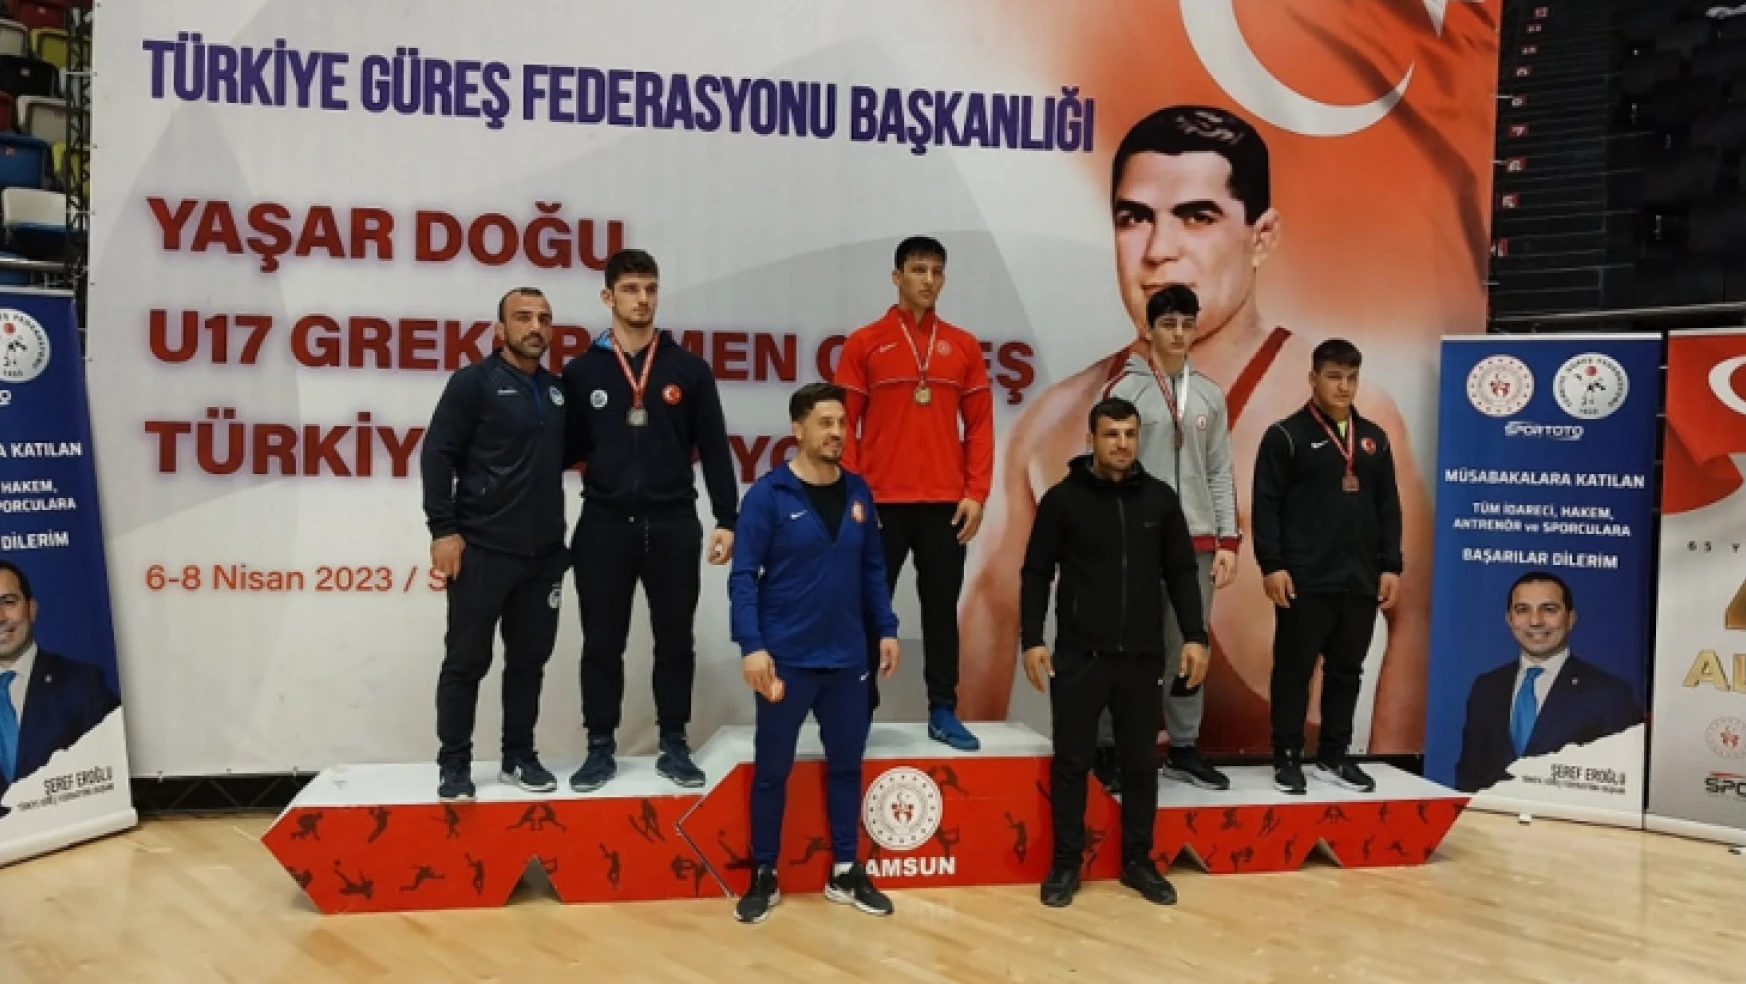 U17 Grekoromen Güreş Türkiye şampiyonasında  Bozbağ Türkiye şampiyonu  oldu